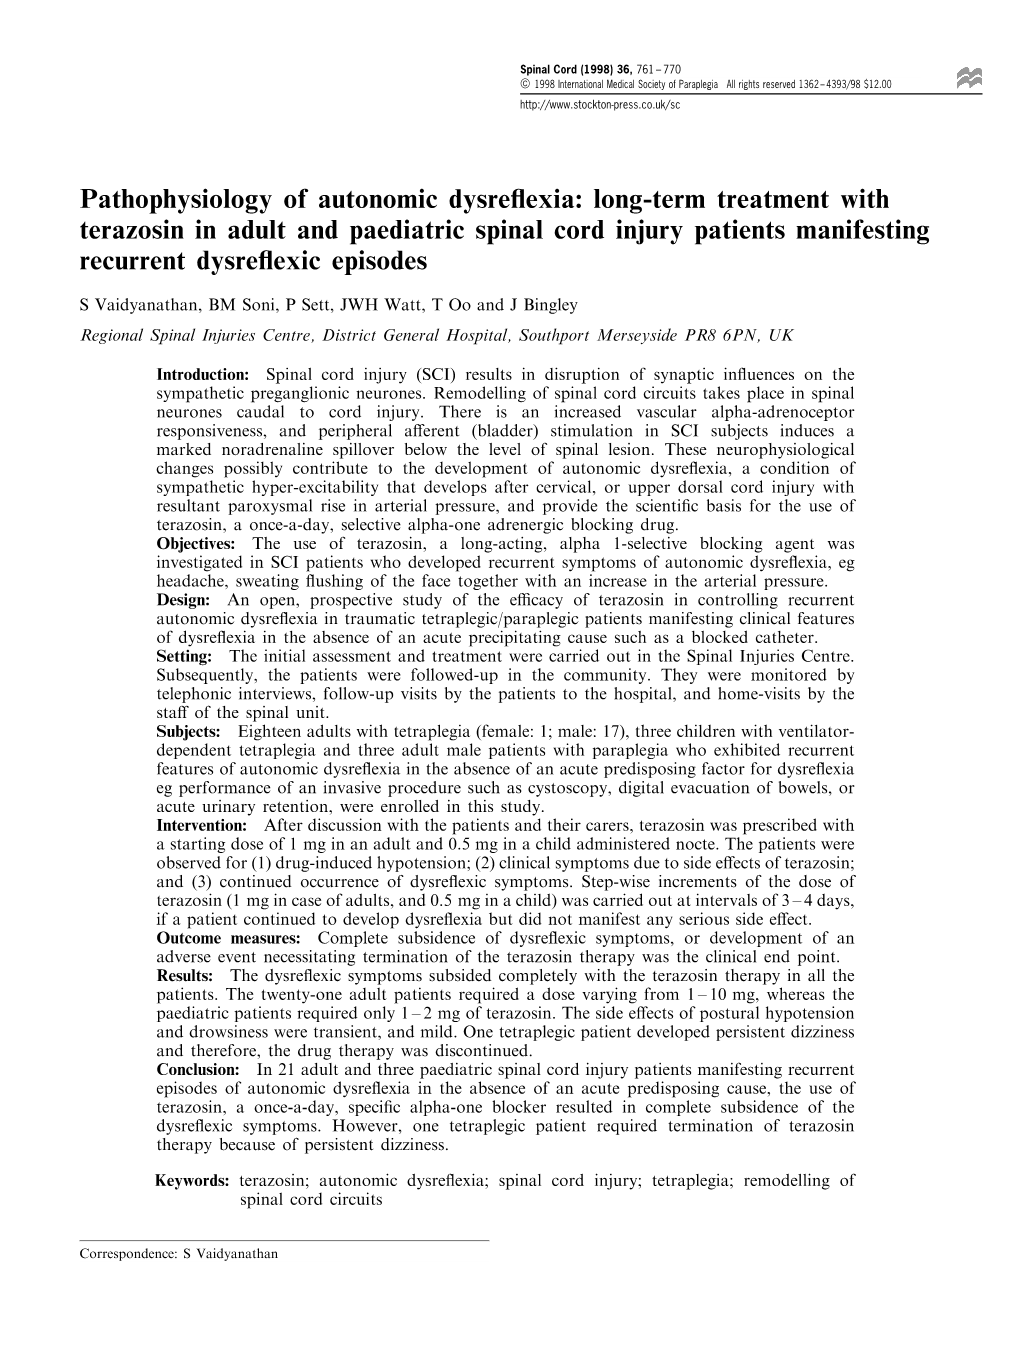 Pathophysiology of Autonomic Dysreflexia